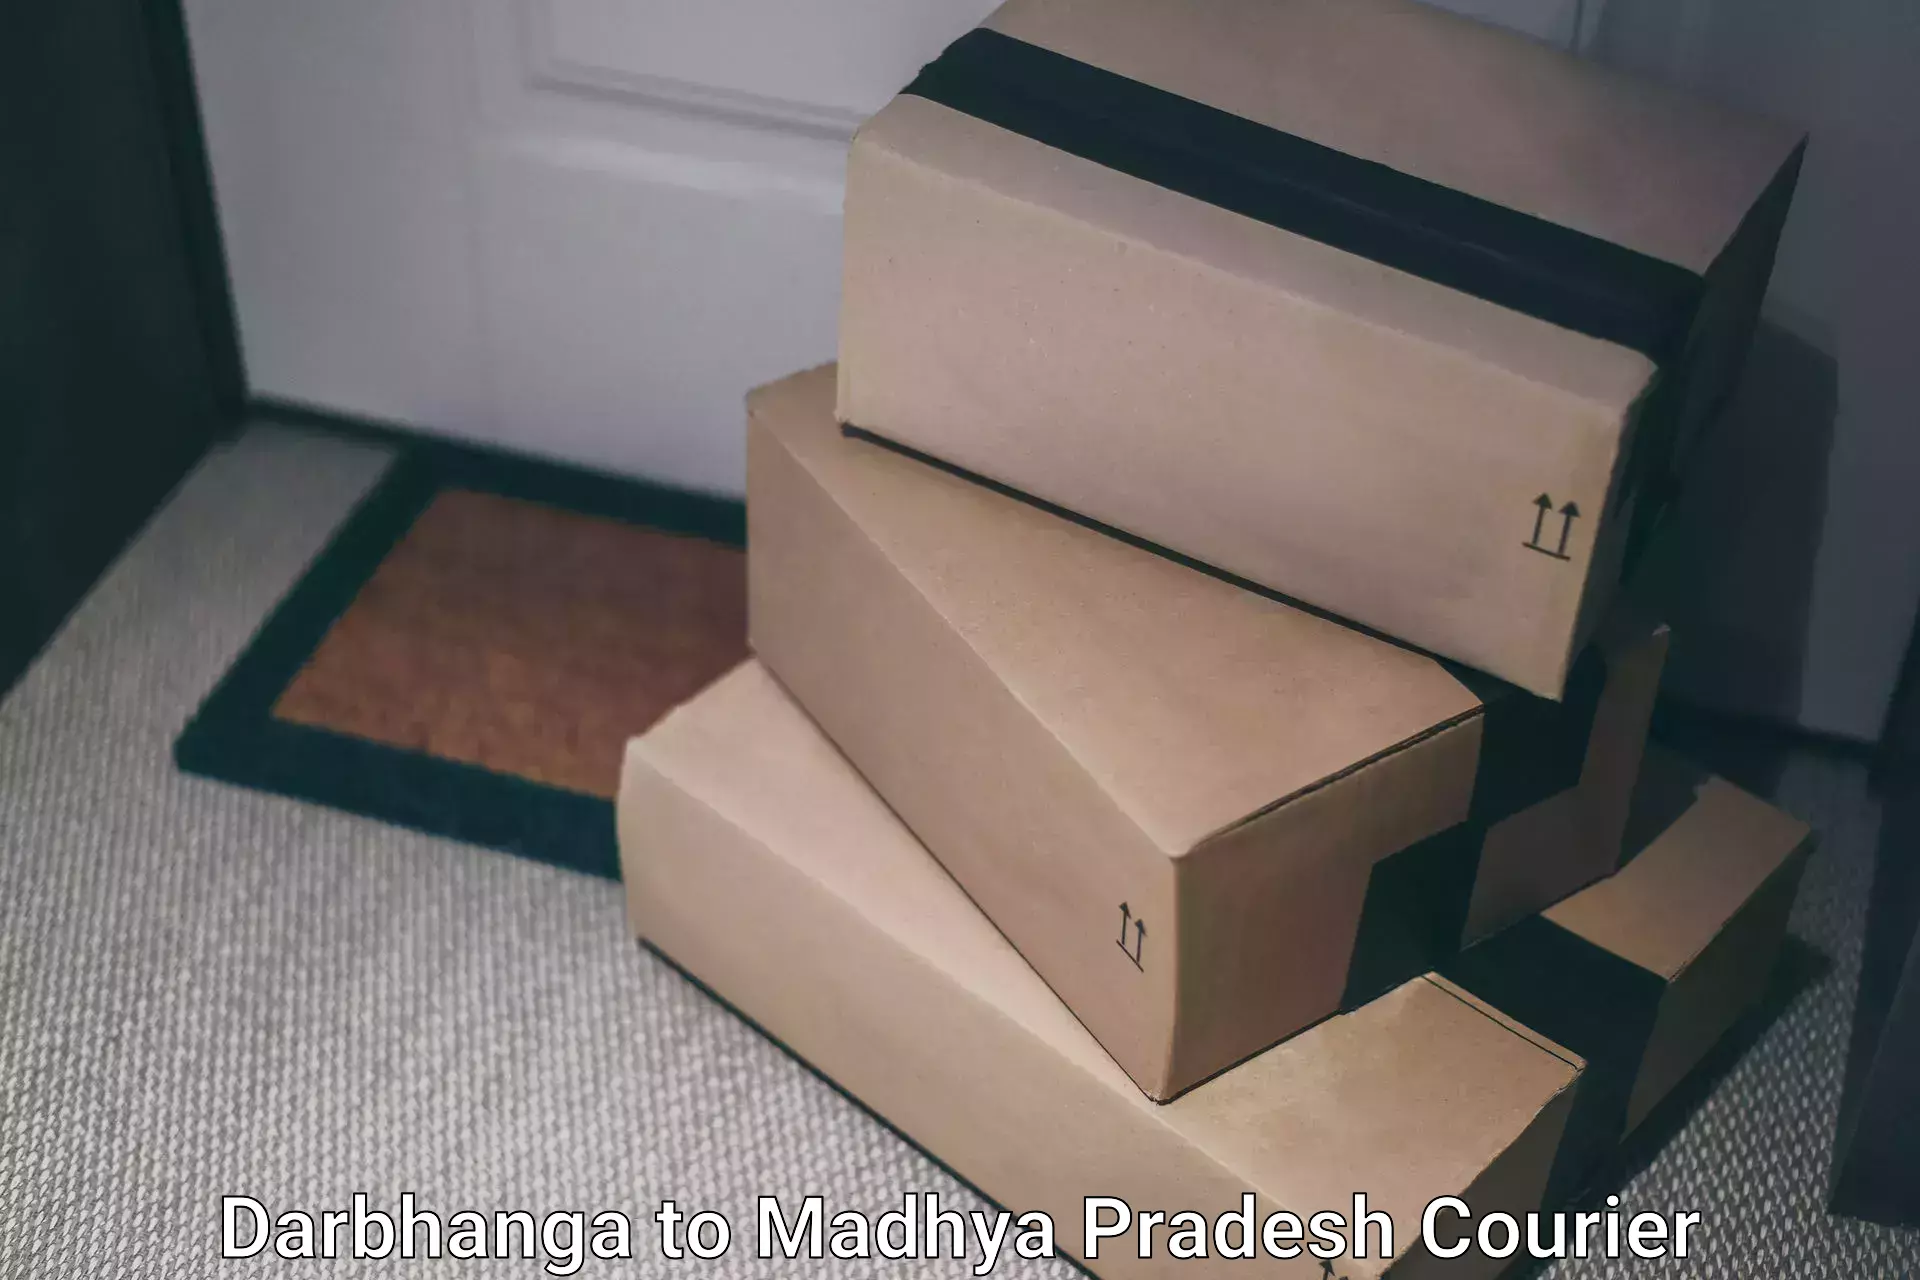 Urgent courier needs Darbhanga to Shahpura Dindori